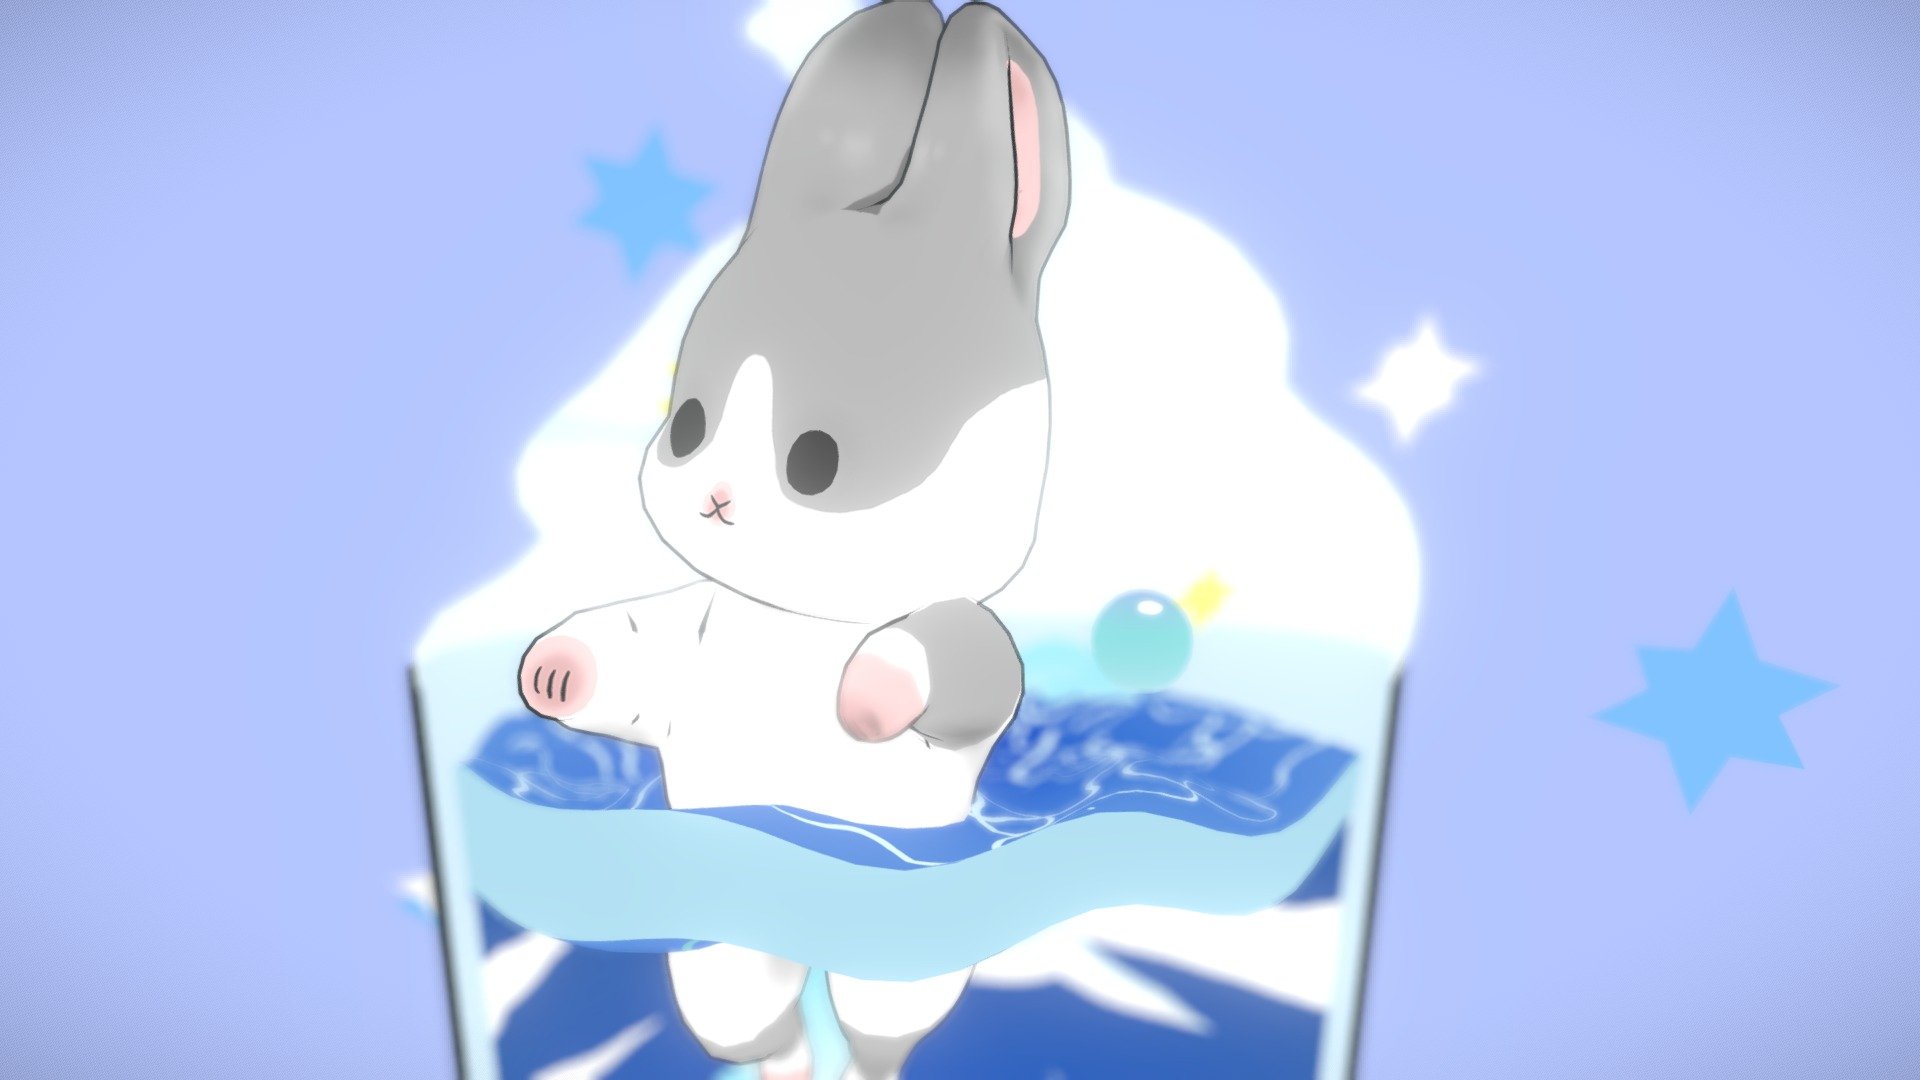 A fanart, Base on ↓↓↓↓↓↓↓↓↓↓↓↓↓
https://twitter.com/machiko324 - cute rabbit Machiko In Cup - 3D model by carlin.chu 3d model